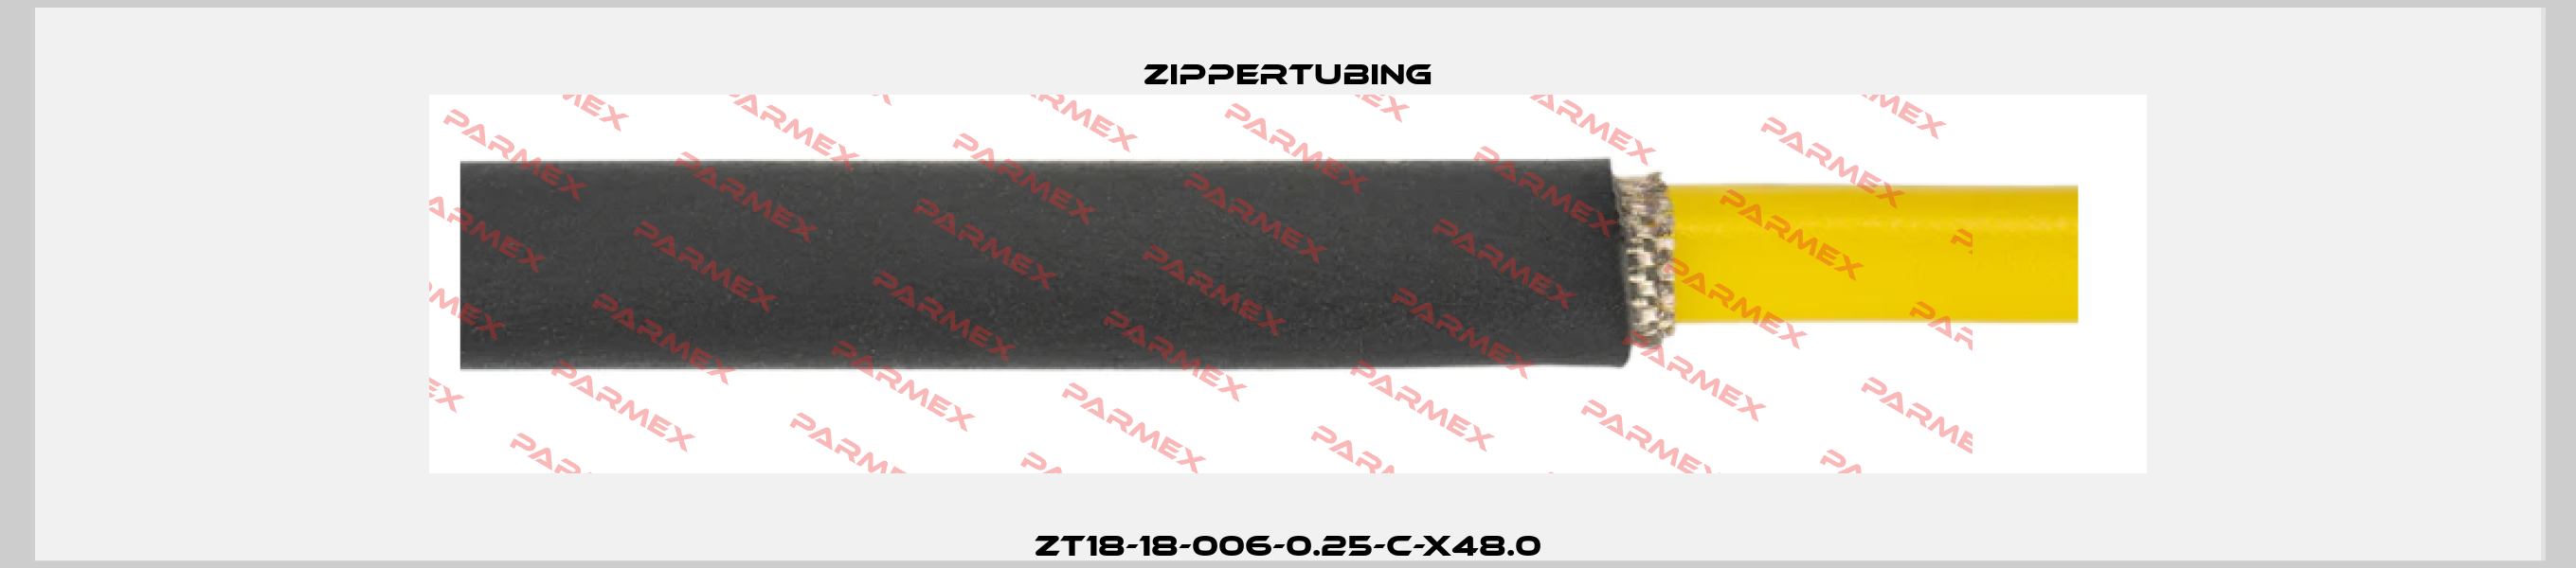 ZT18-18-006-0.25-C-X48.0 Zippertubing